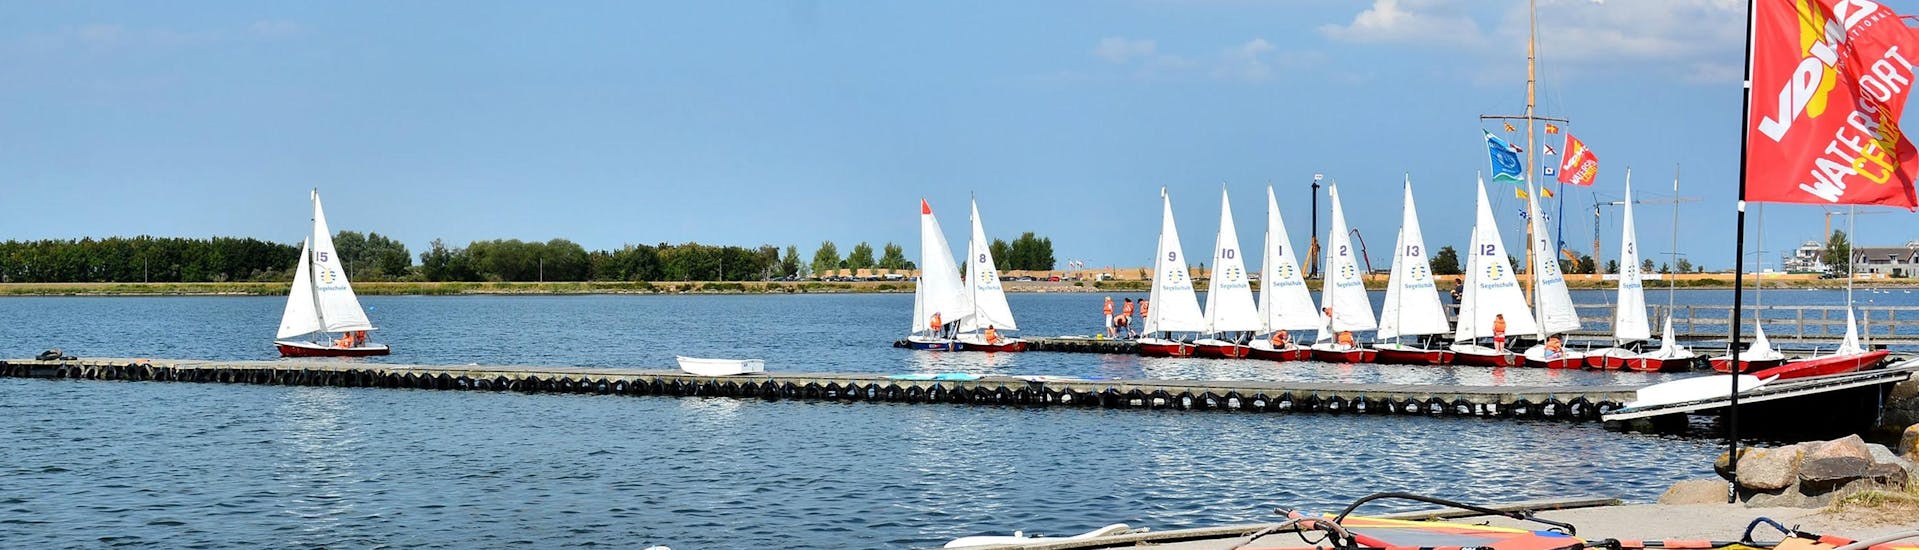 Ein Blick auf den See während des Windsurfingkurses "SAC Step Freestyle" - Heiligenhafen mit dem Wassersportcenter Heiligenhafen.